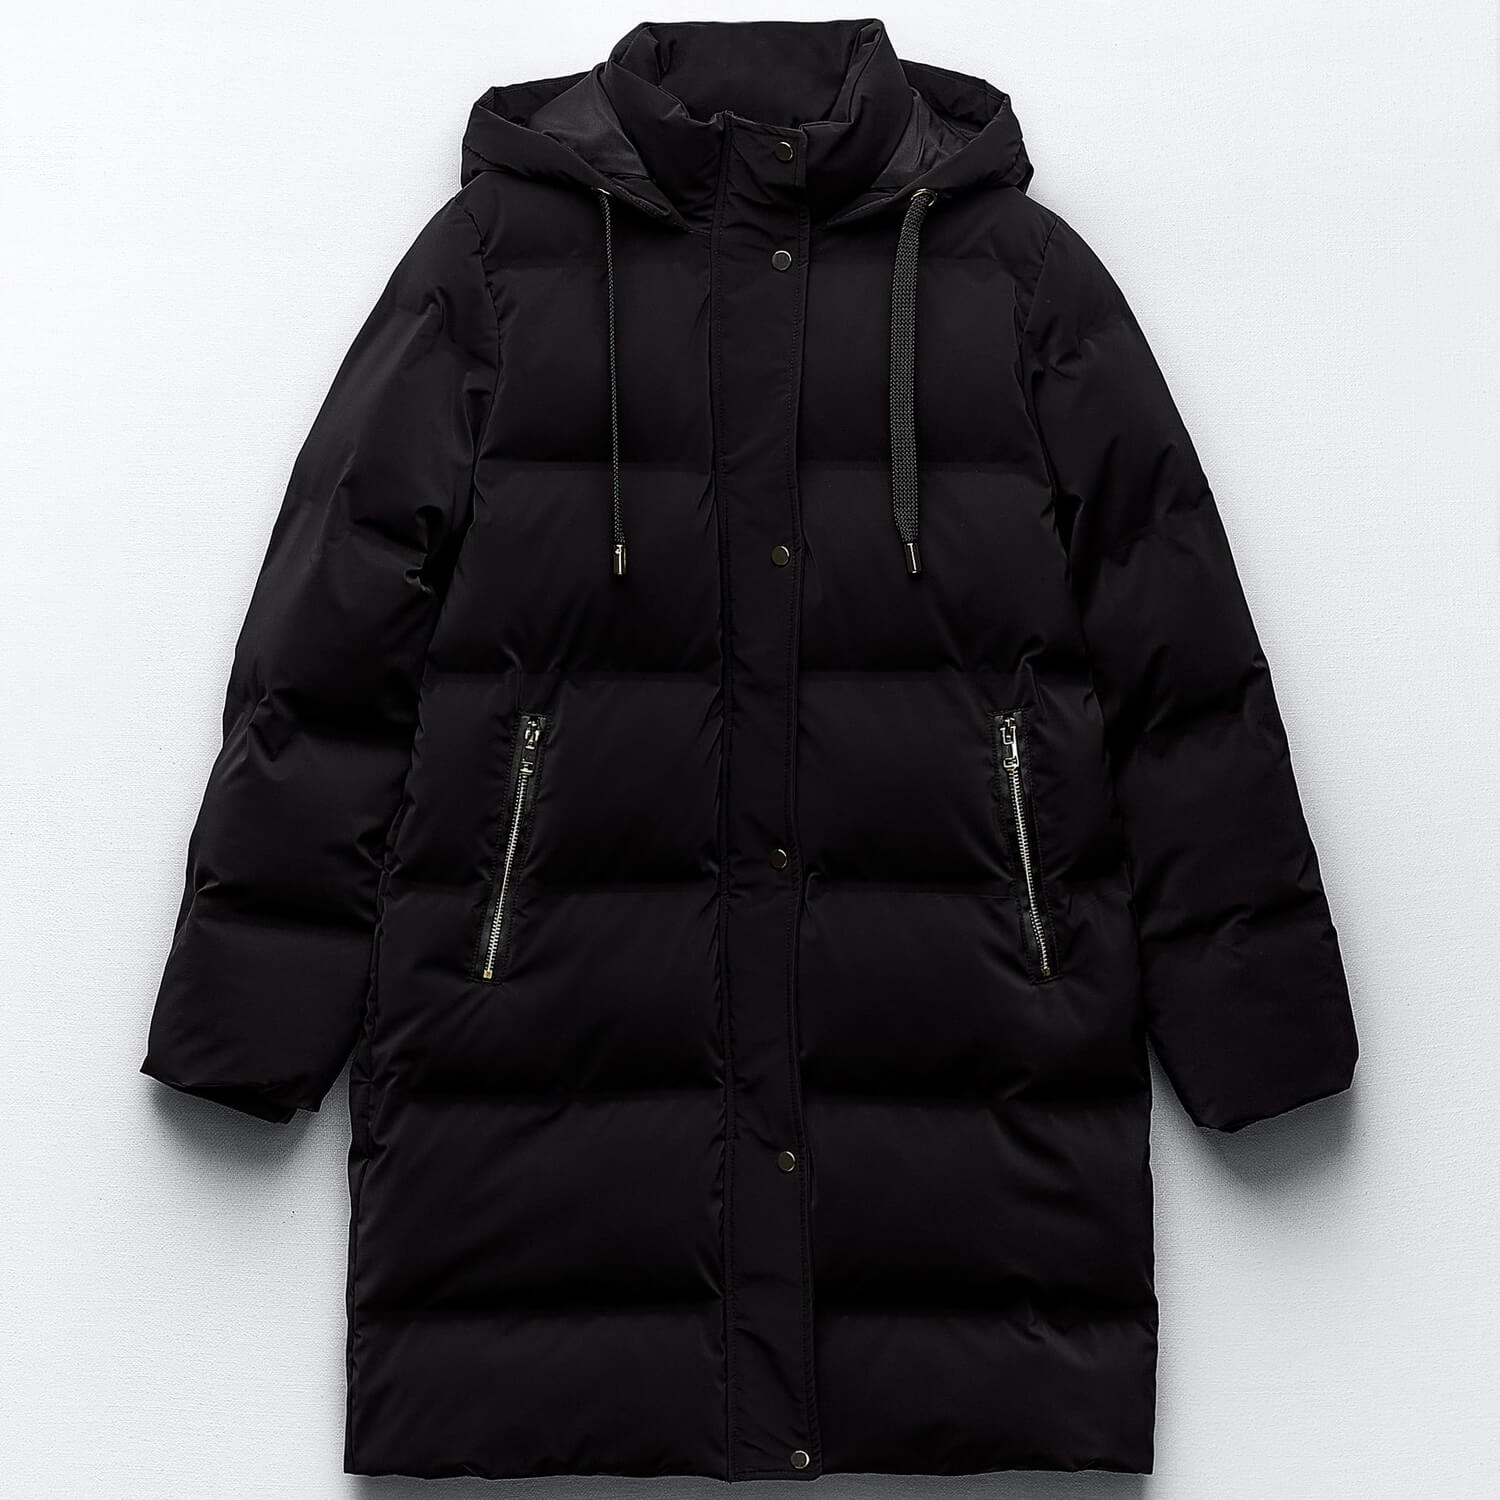 Куртка-анорак Zara Hooded With Wind Protection, черный толстовка mexx средней длины капюшон манжеты карманы размер 122 128 синий